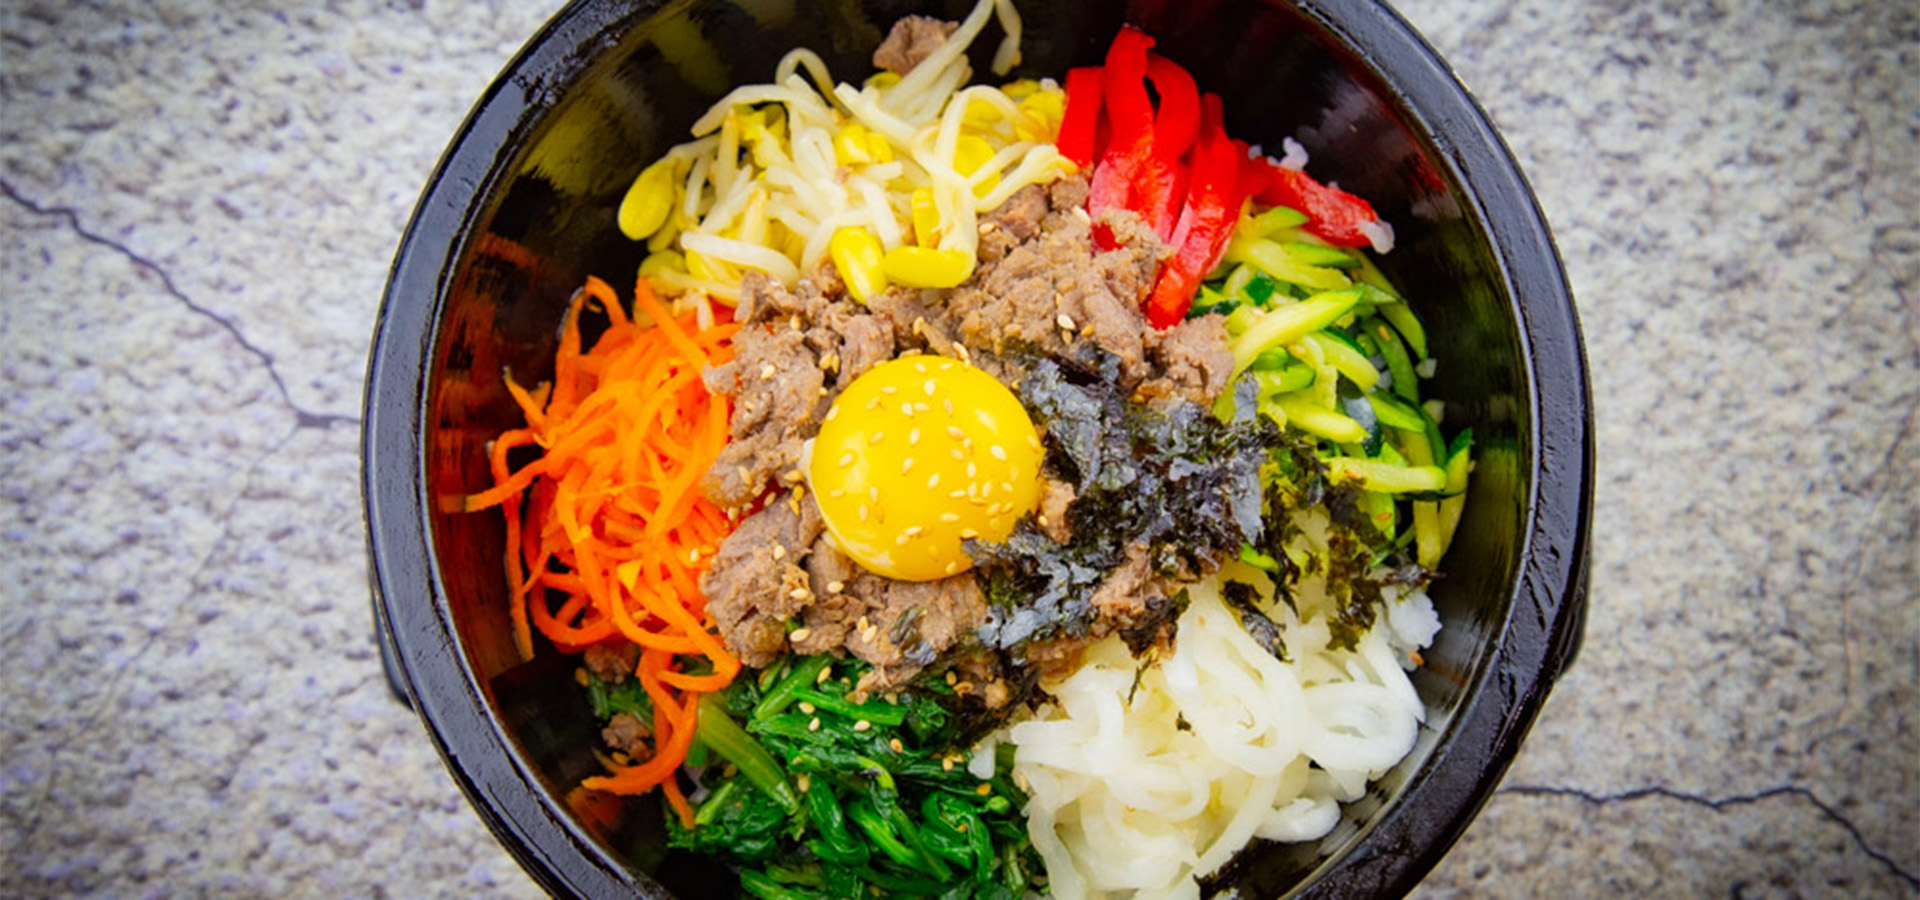 korean food closeup